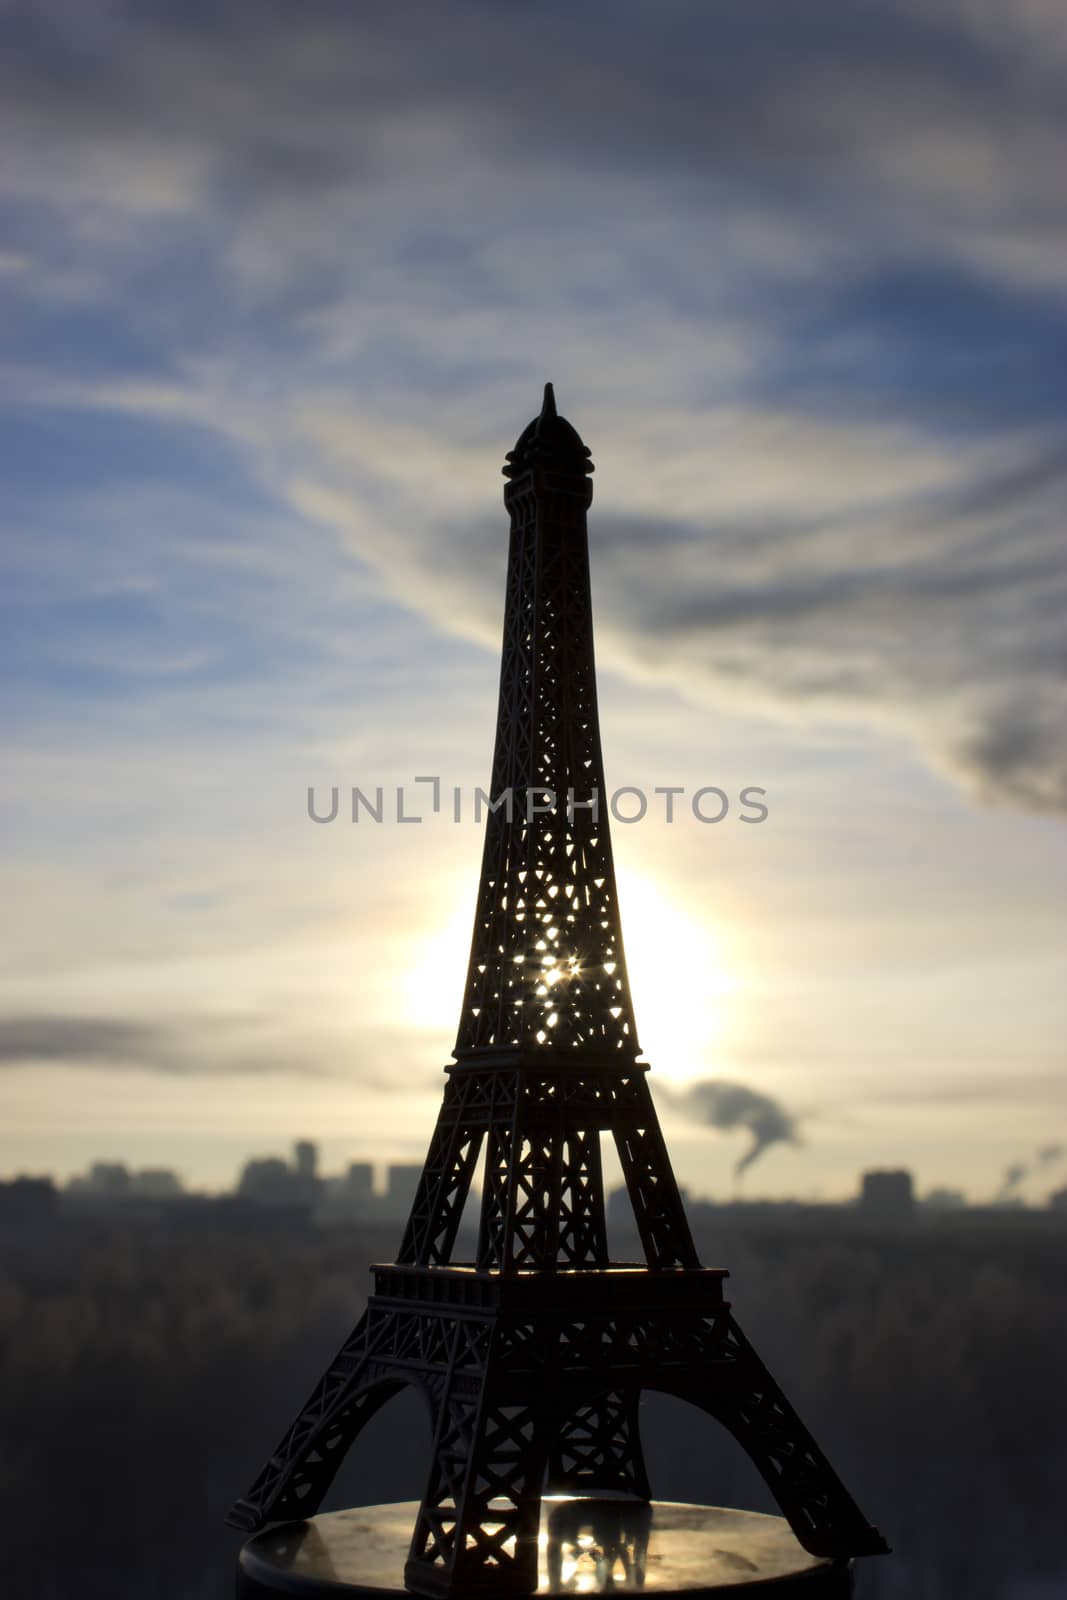 miniature of  Eiffel Tower  by liwei12